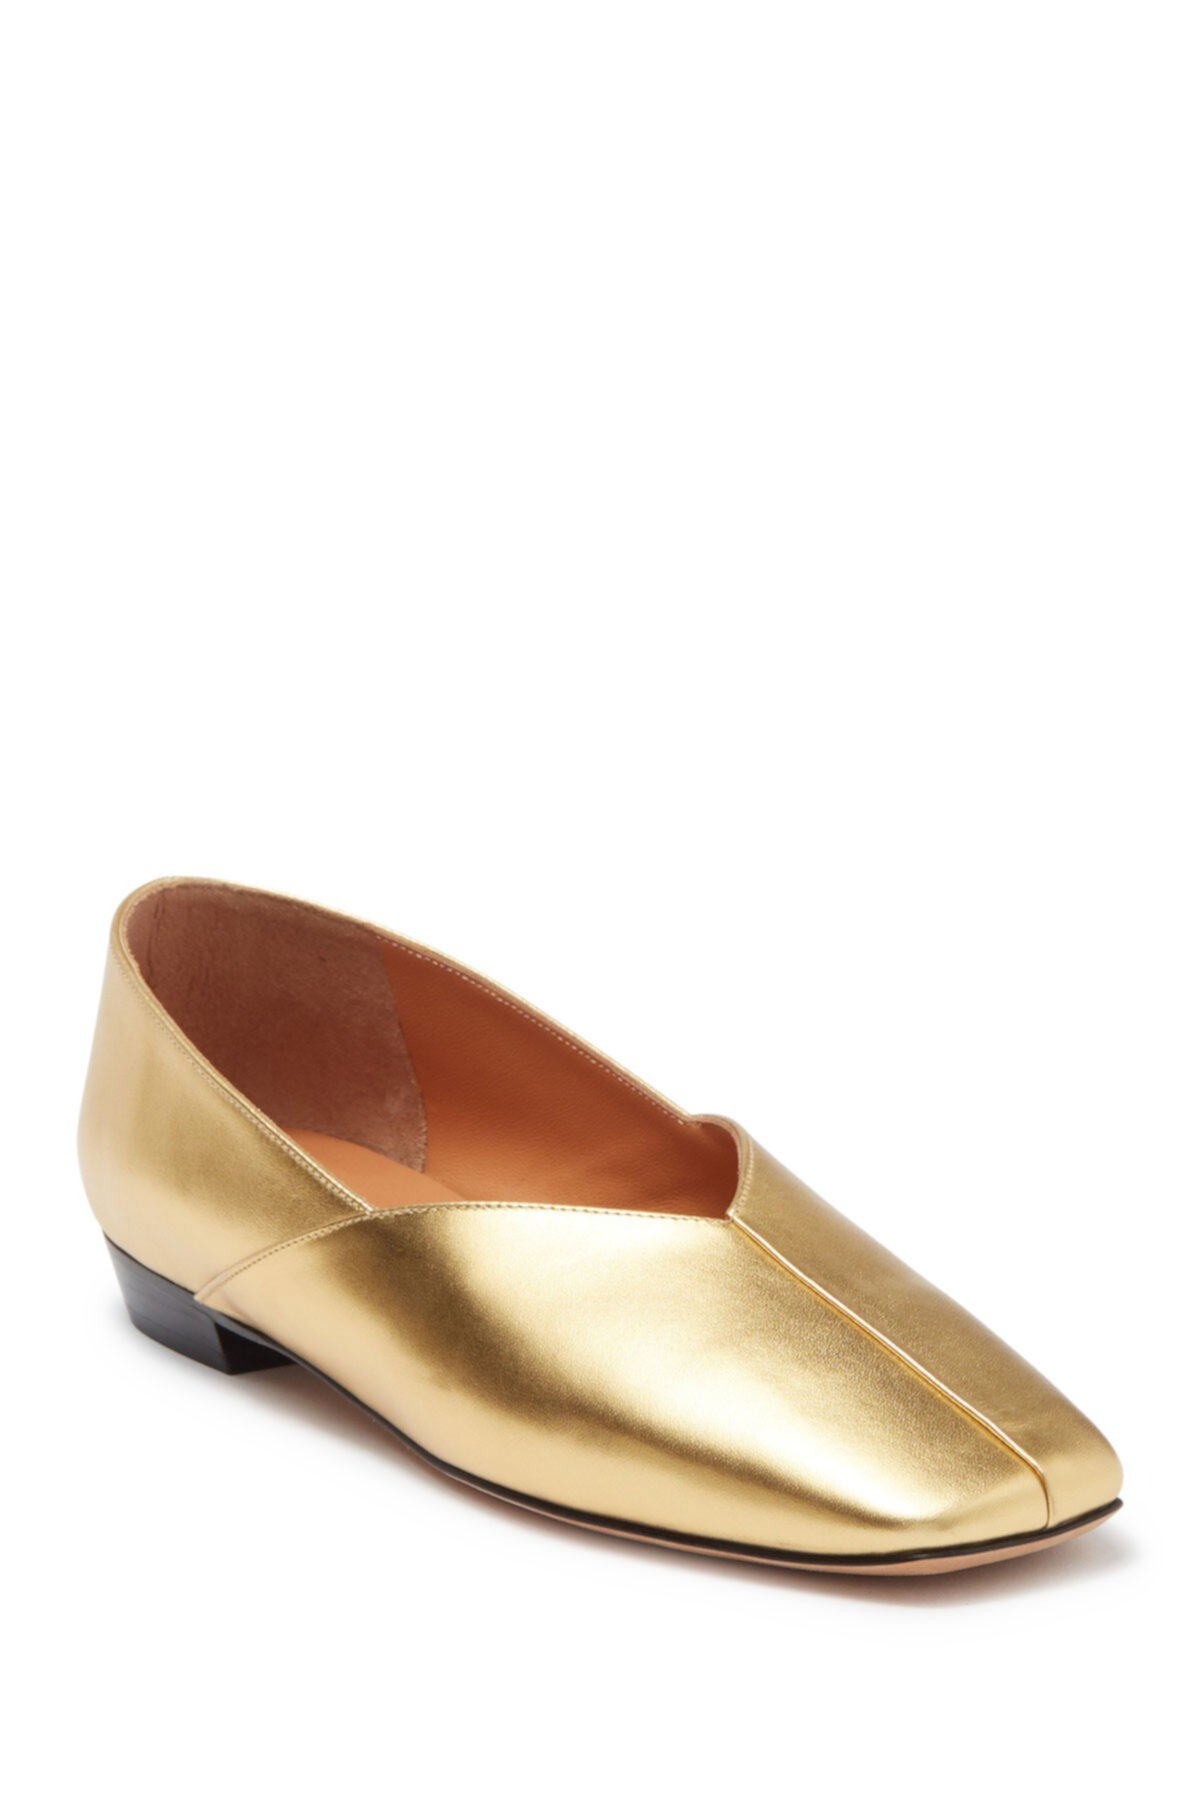 Плоские туфли на плоской подошве с квадратным носком Bombi из кожи металлик Rachel Comey